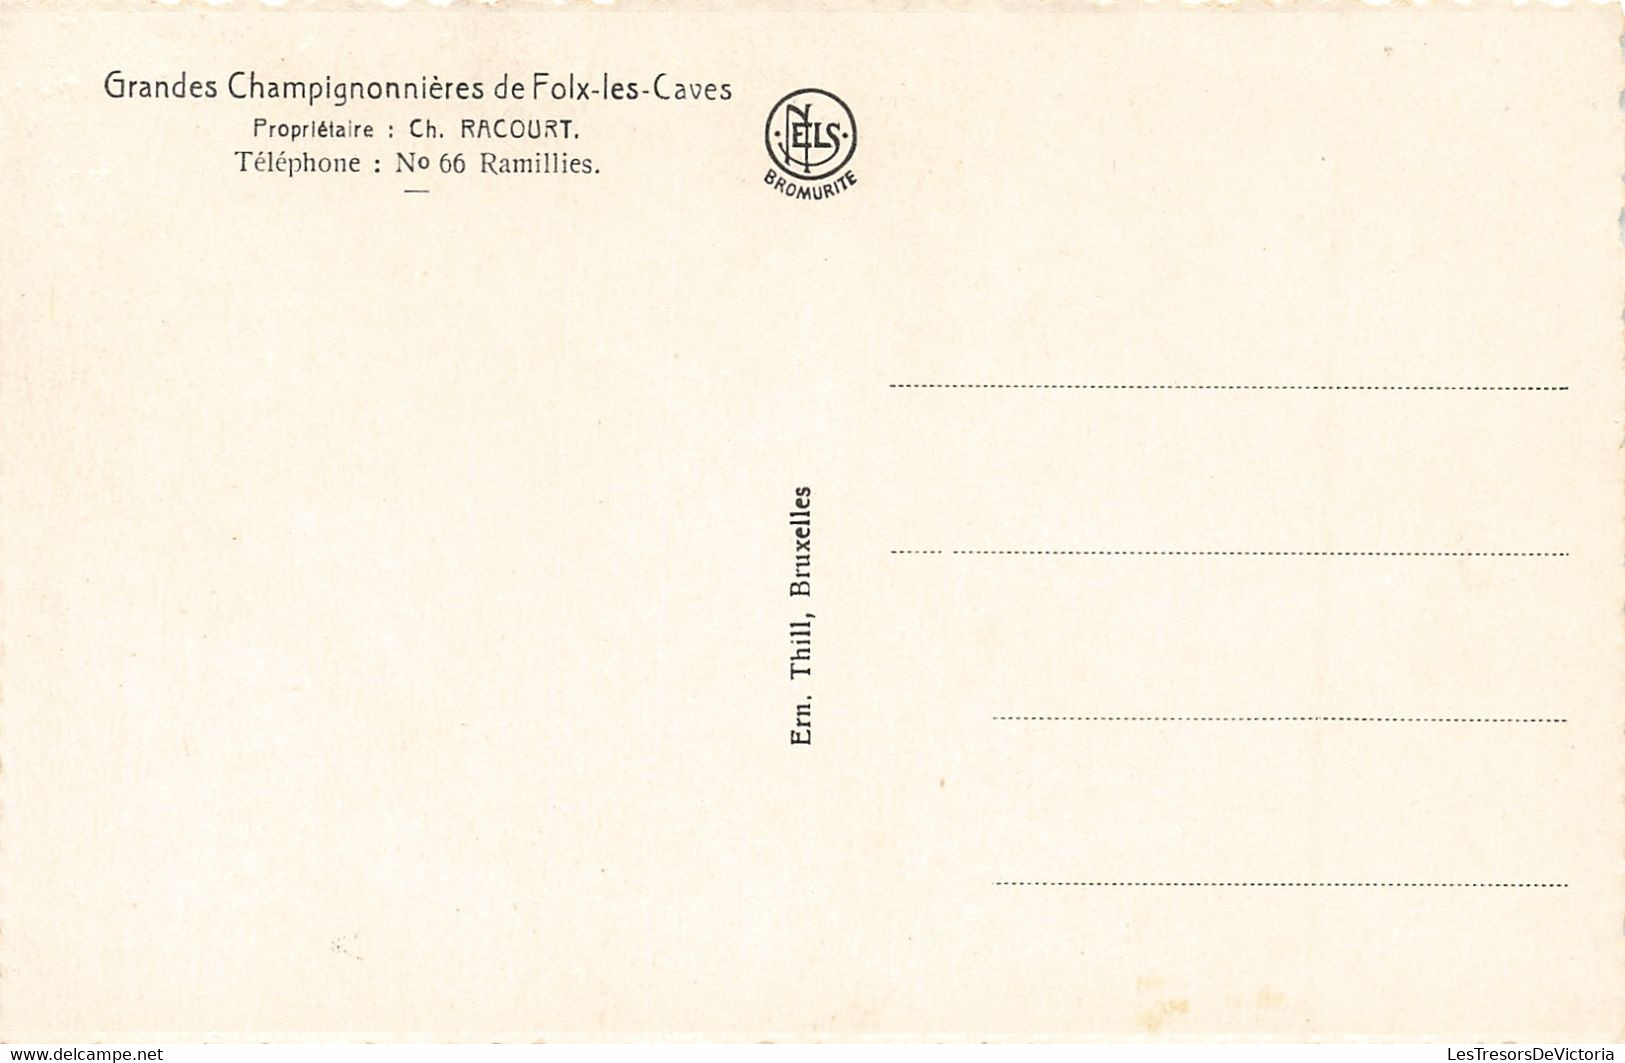 Belgique - Lot de 10 Cartes - Grandes Champignonnières de Folx les caves - Ed. Nels - Bromurite - C. Postale Ancienne